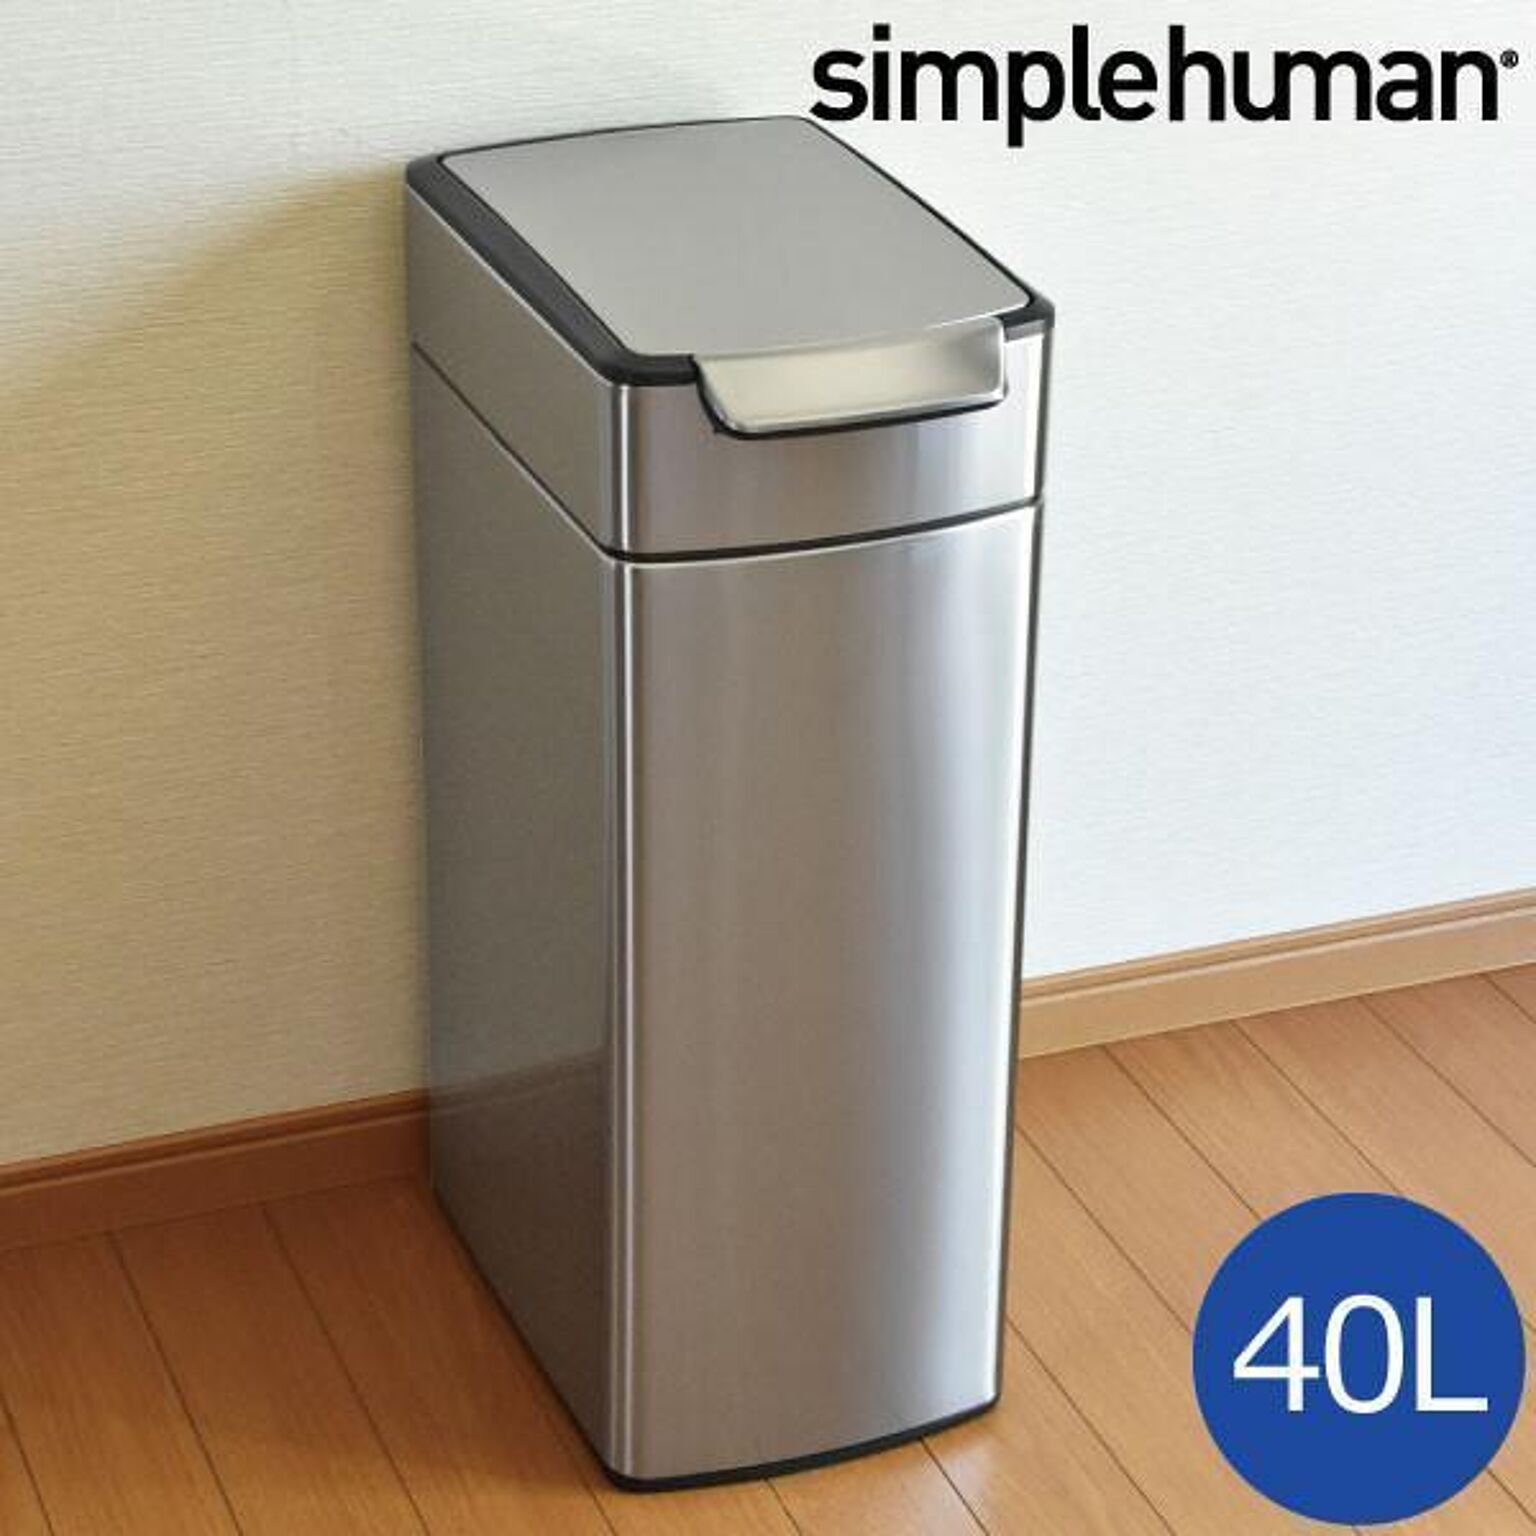 simplehuman スリムタッチバーダストボックス 40L シンプルヒューマン 通販 家具とインテリアの通販【RoomClipショッピング】